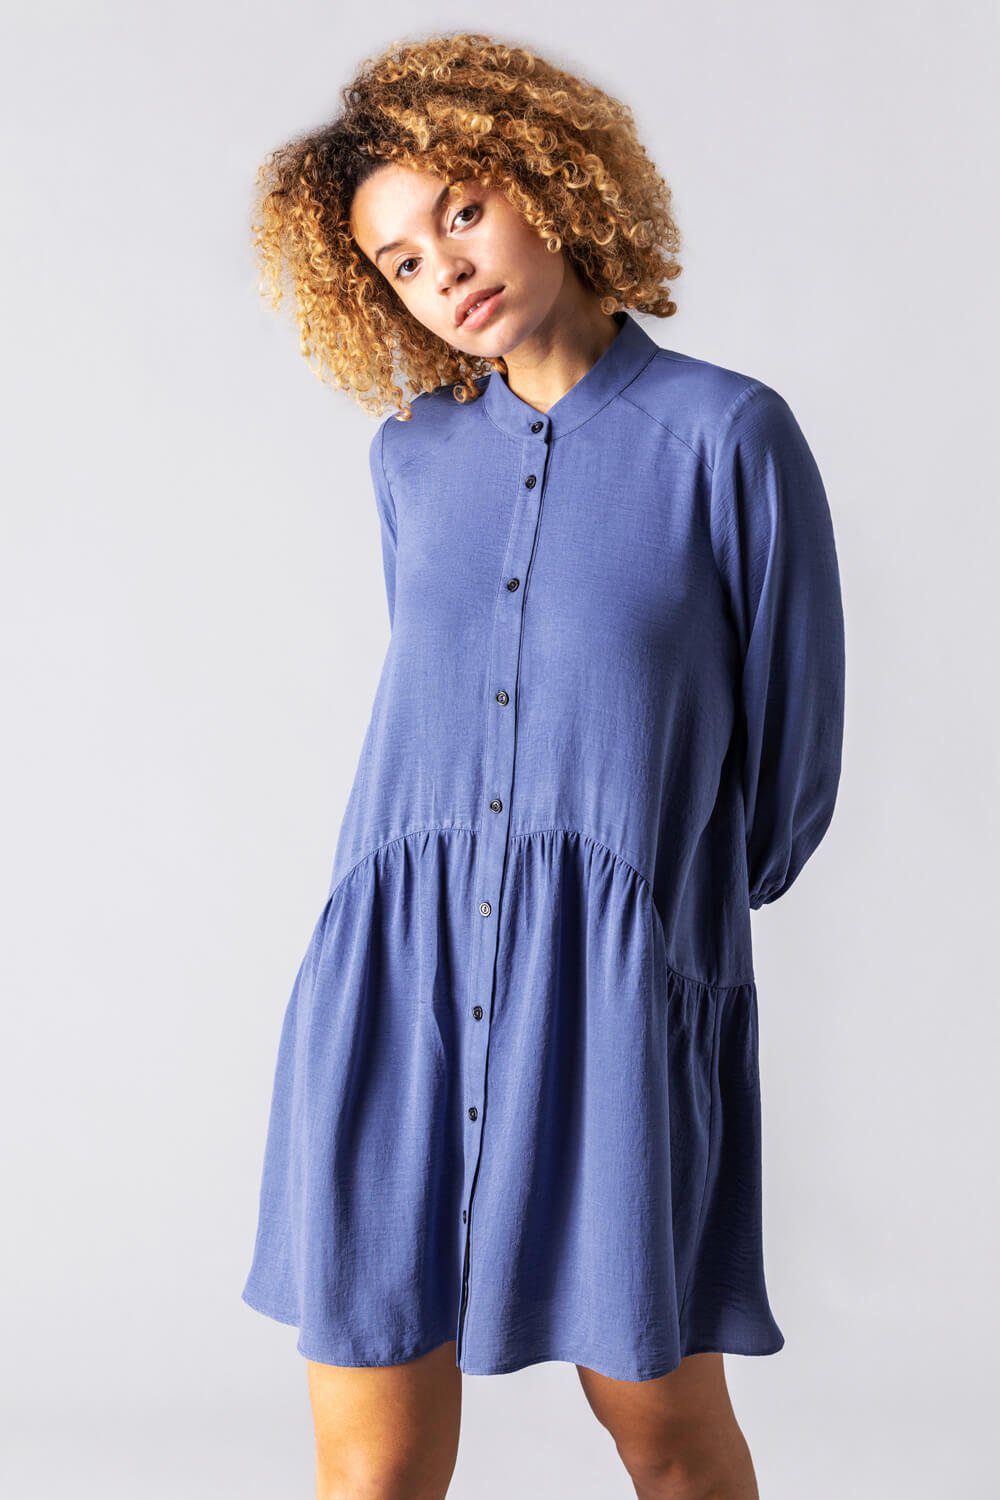 Dropped Waist Shirt Dress in Denim Blue - Roman Originals UK